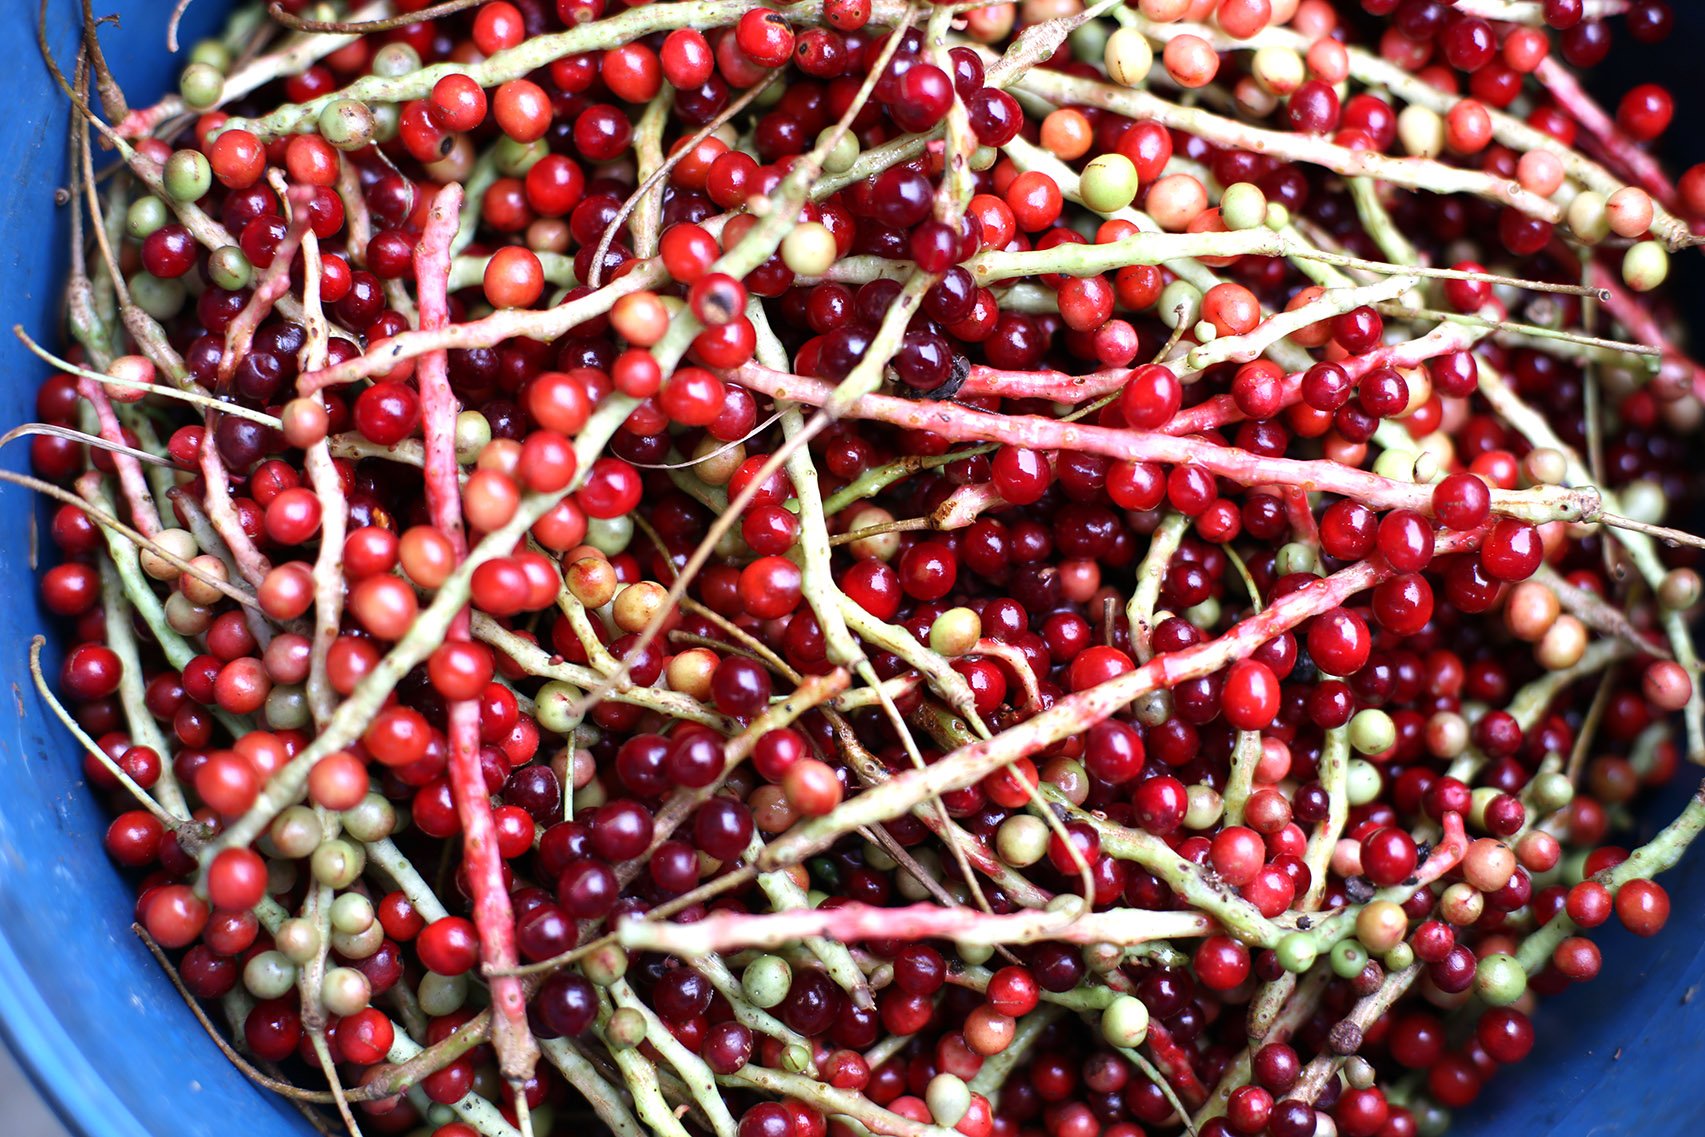 schisandra berries in basket